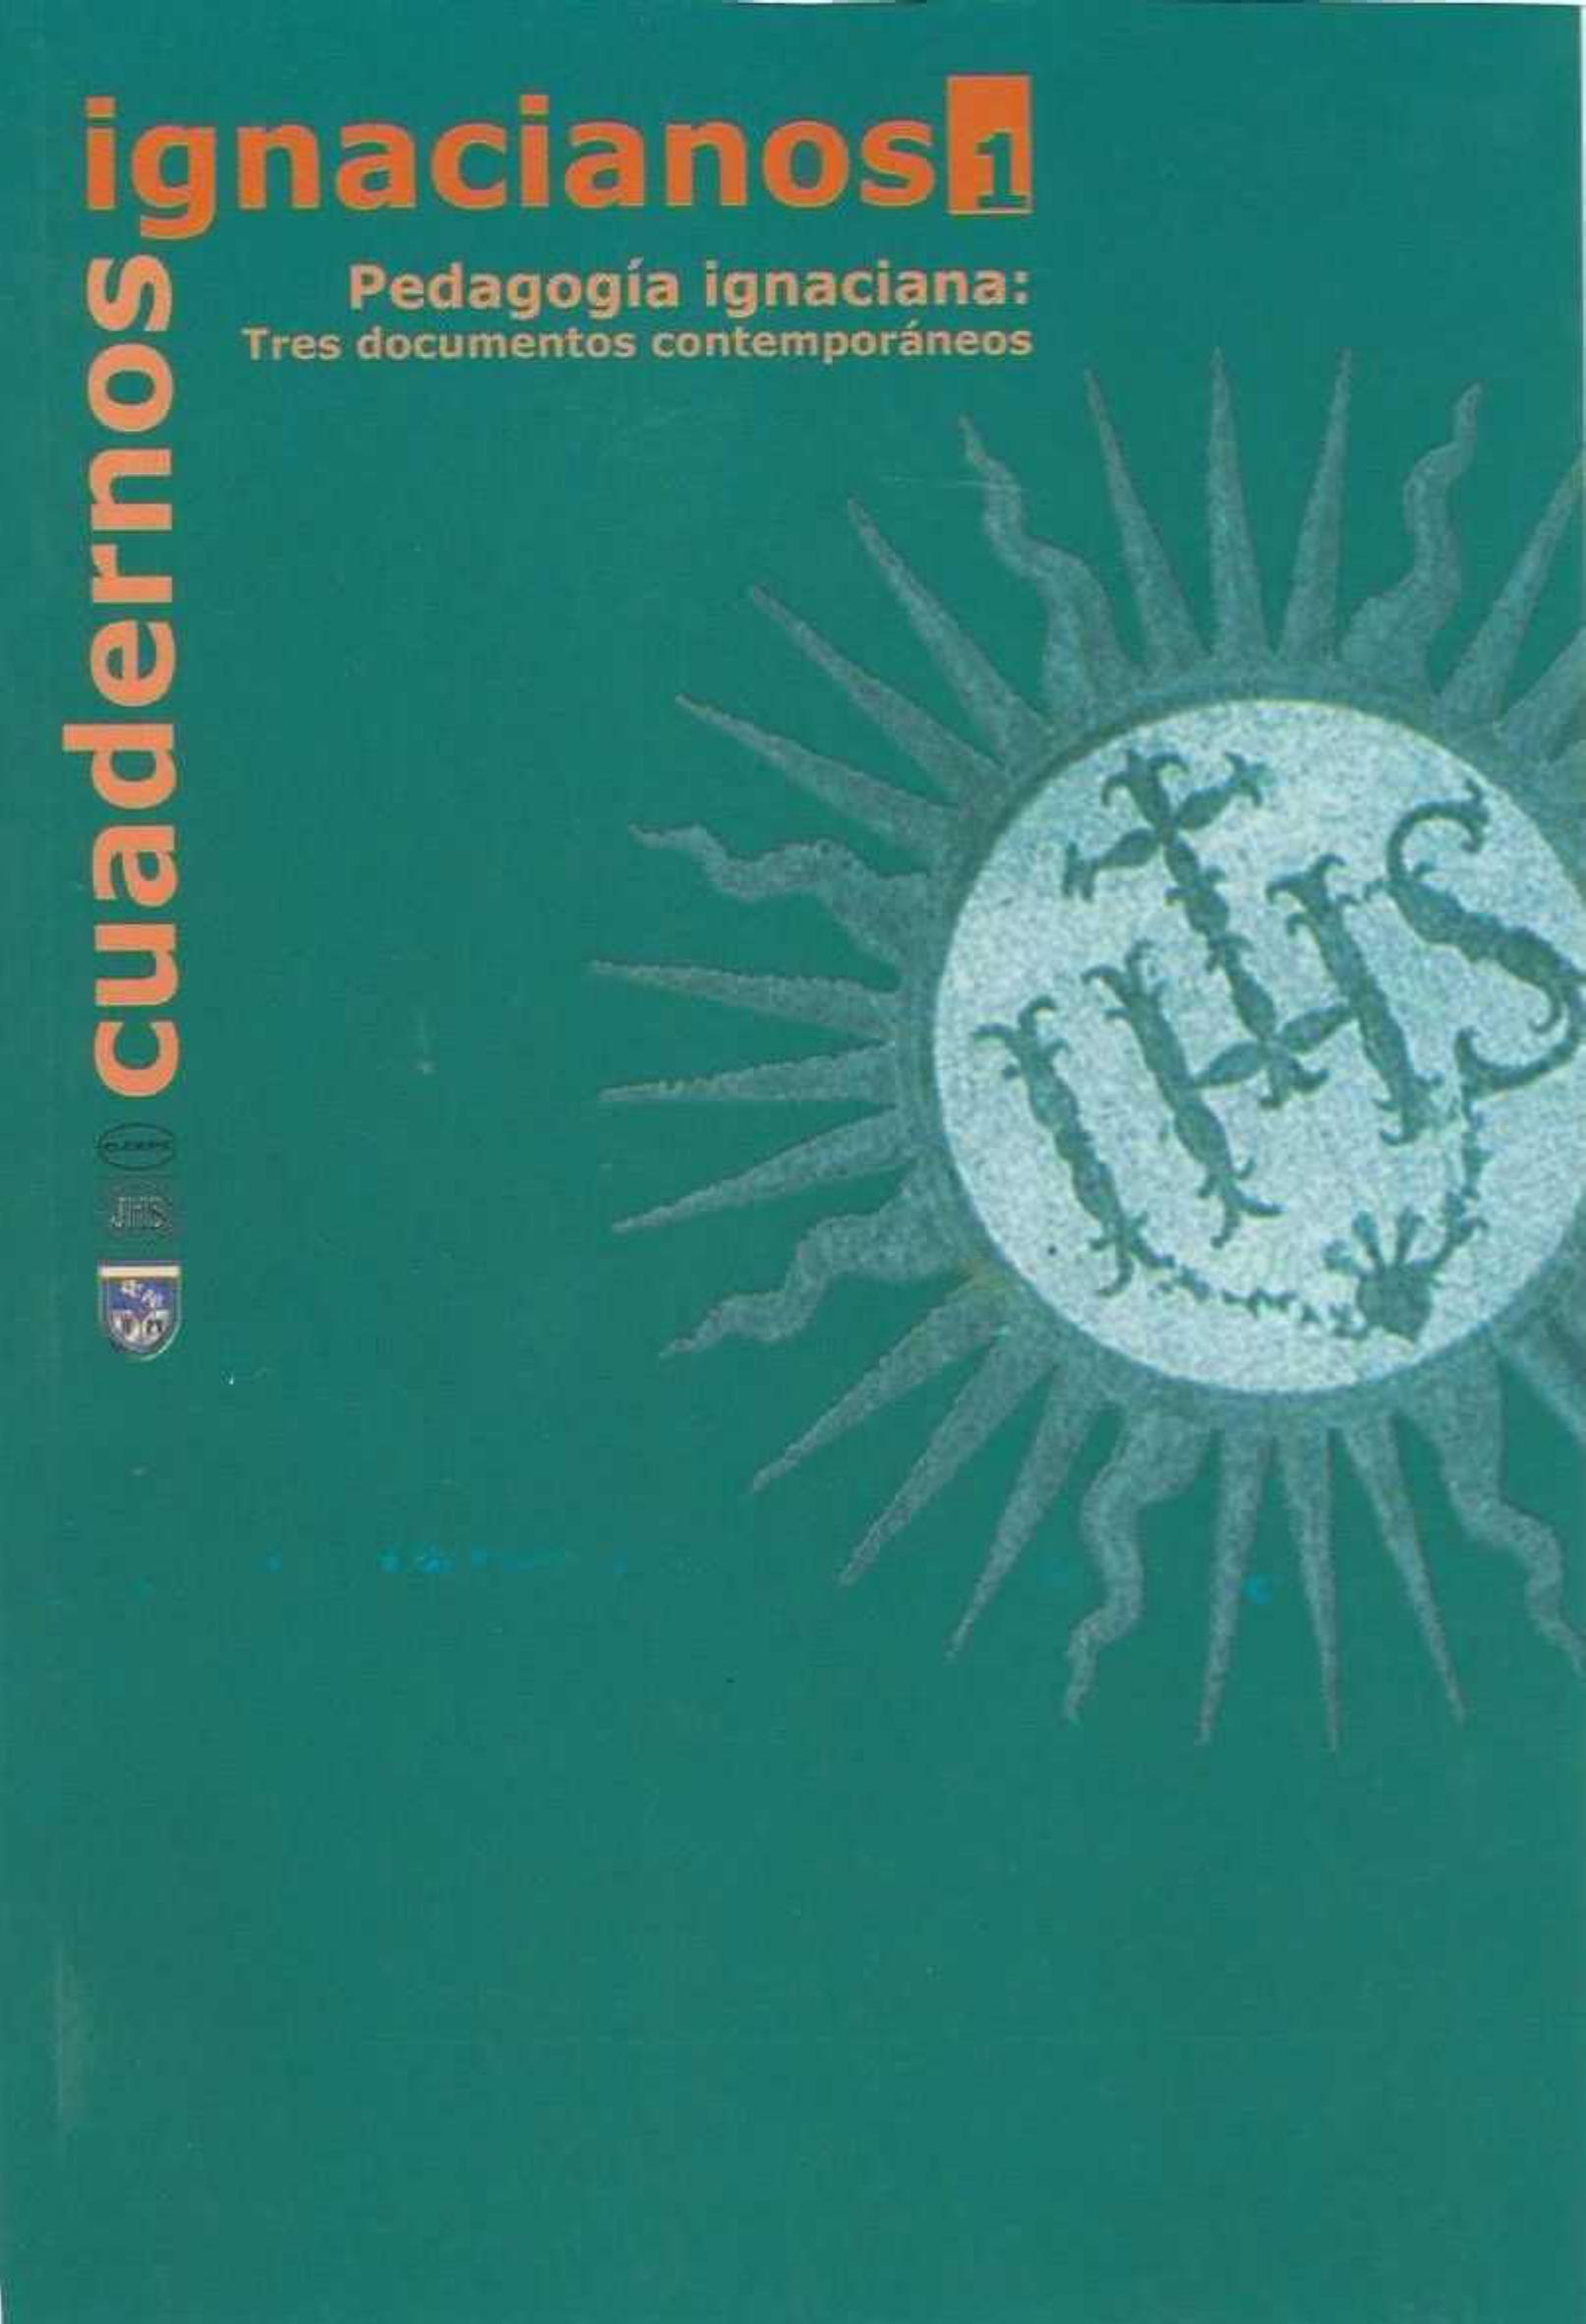                     Ver Núm. 1 (2000): Cuadernos Ignacianos
                